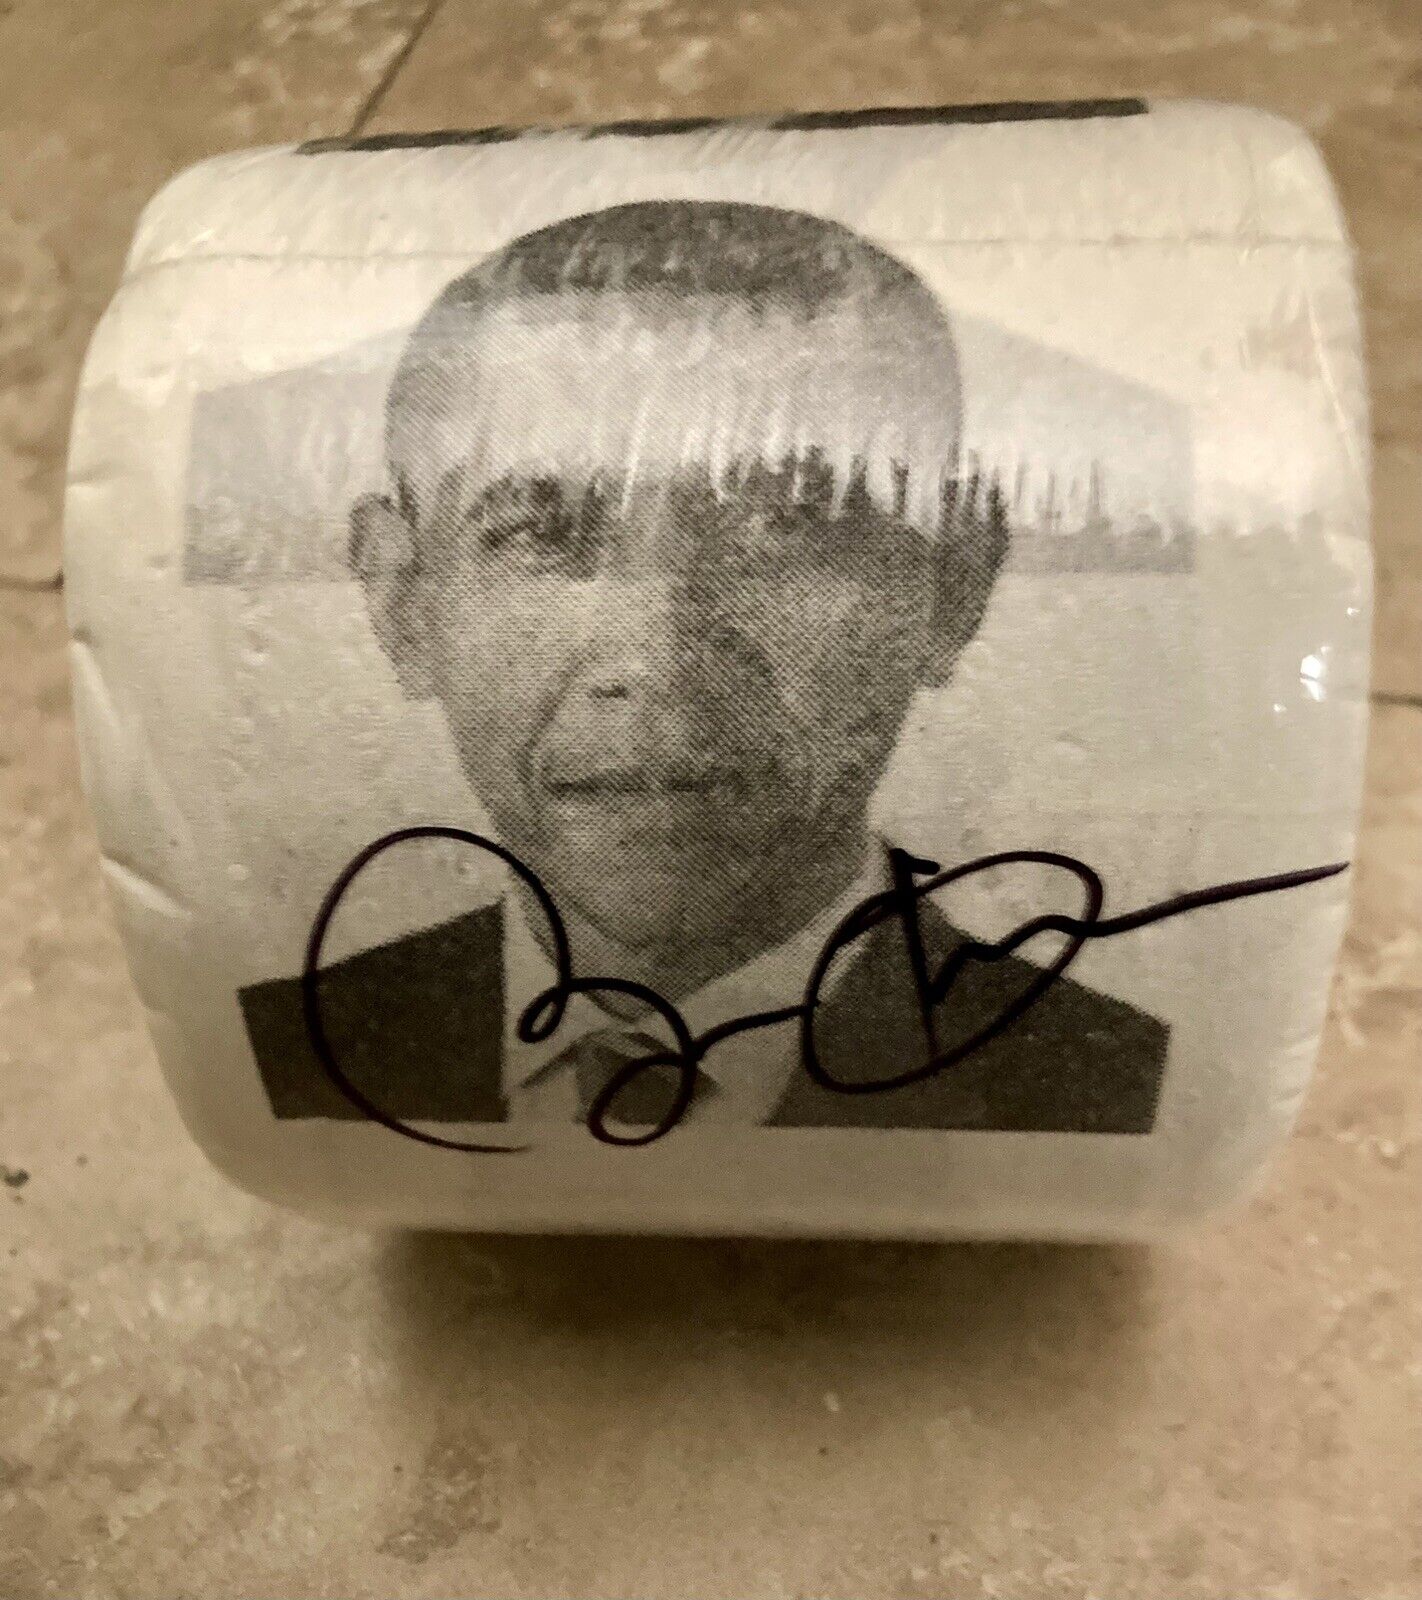 Barack Obama Signed Toilet Paper Roll